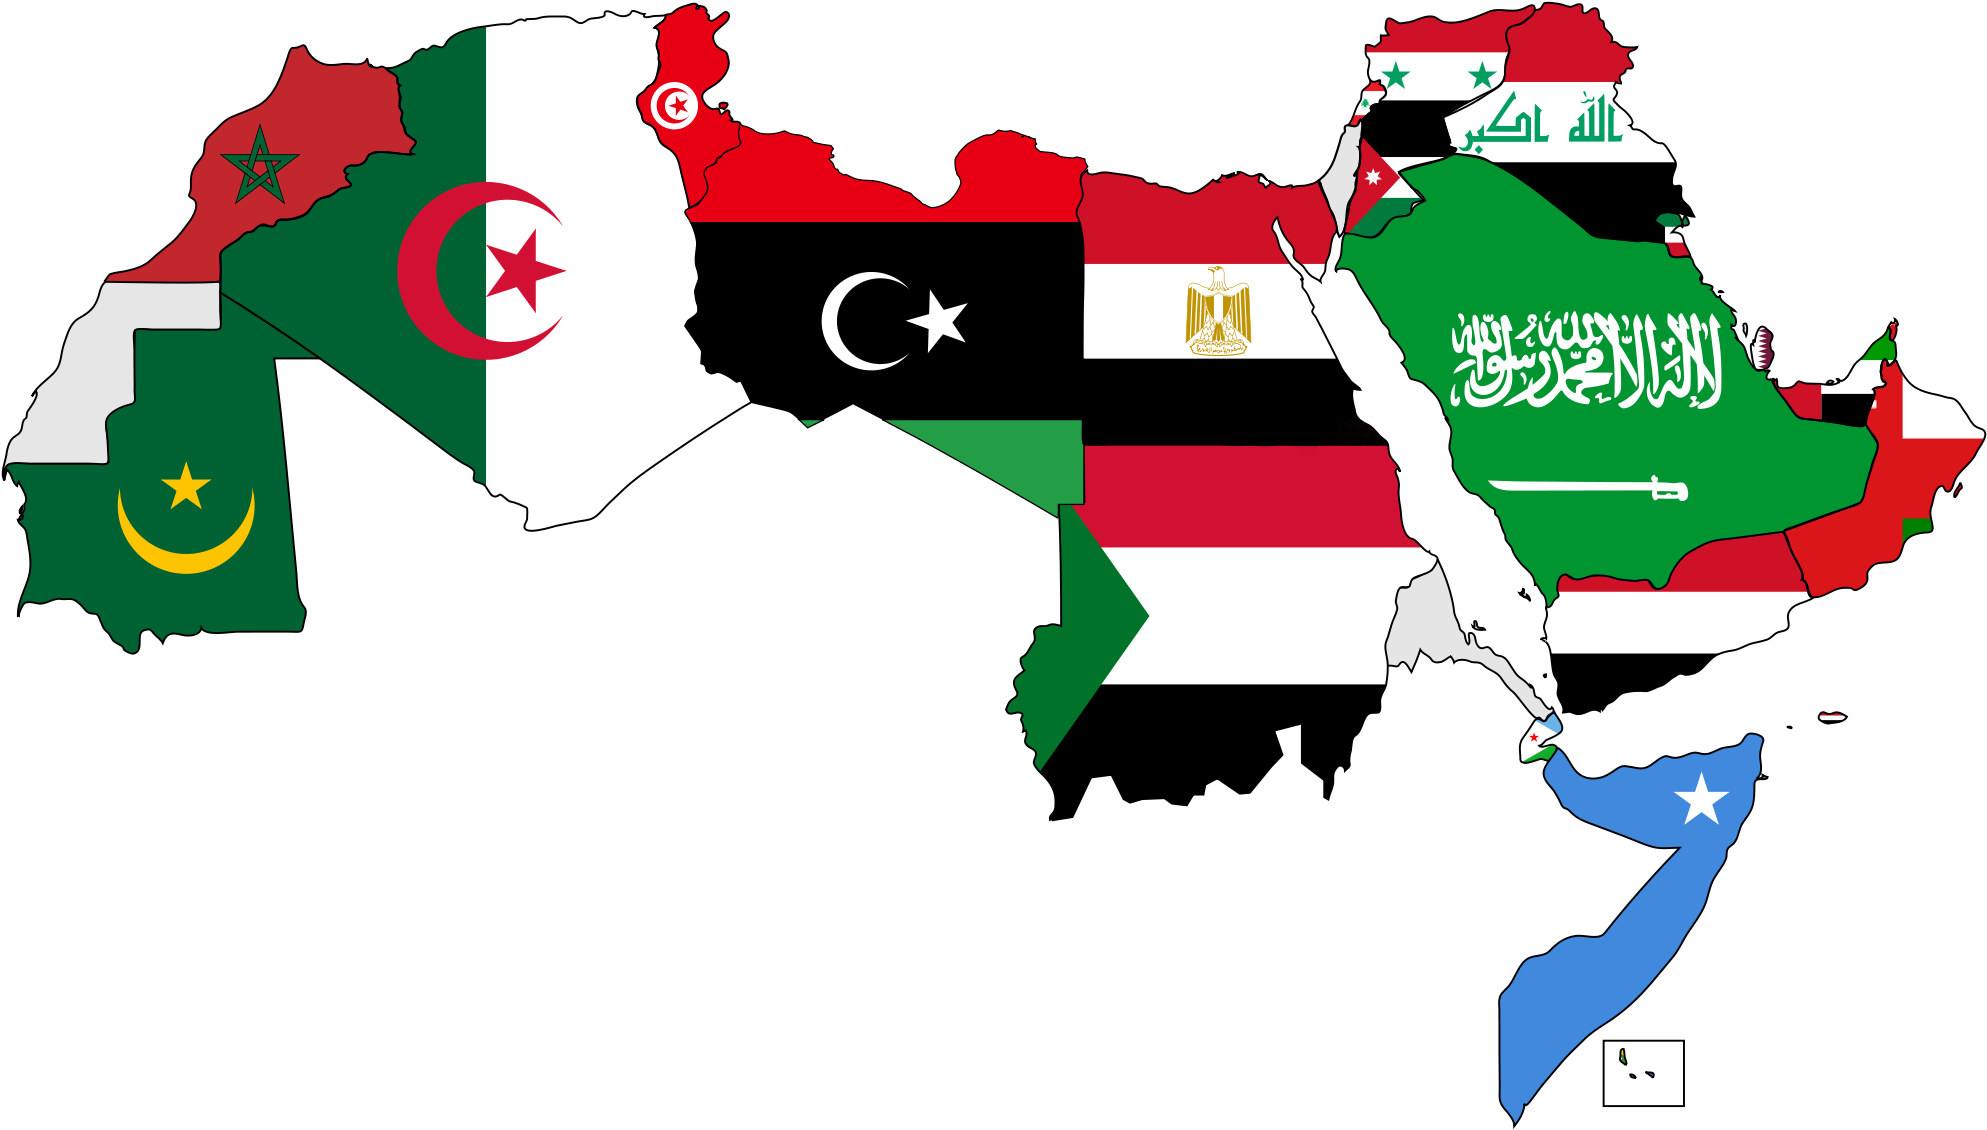 Arab asia. Лига арабских государств страны на карте. Арабский мир. Арабские страны на карте. Арабские государства на карте.